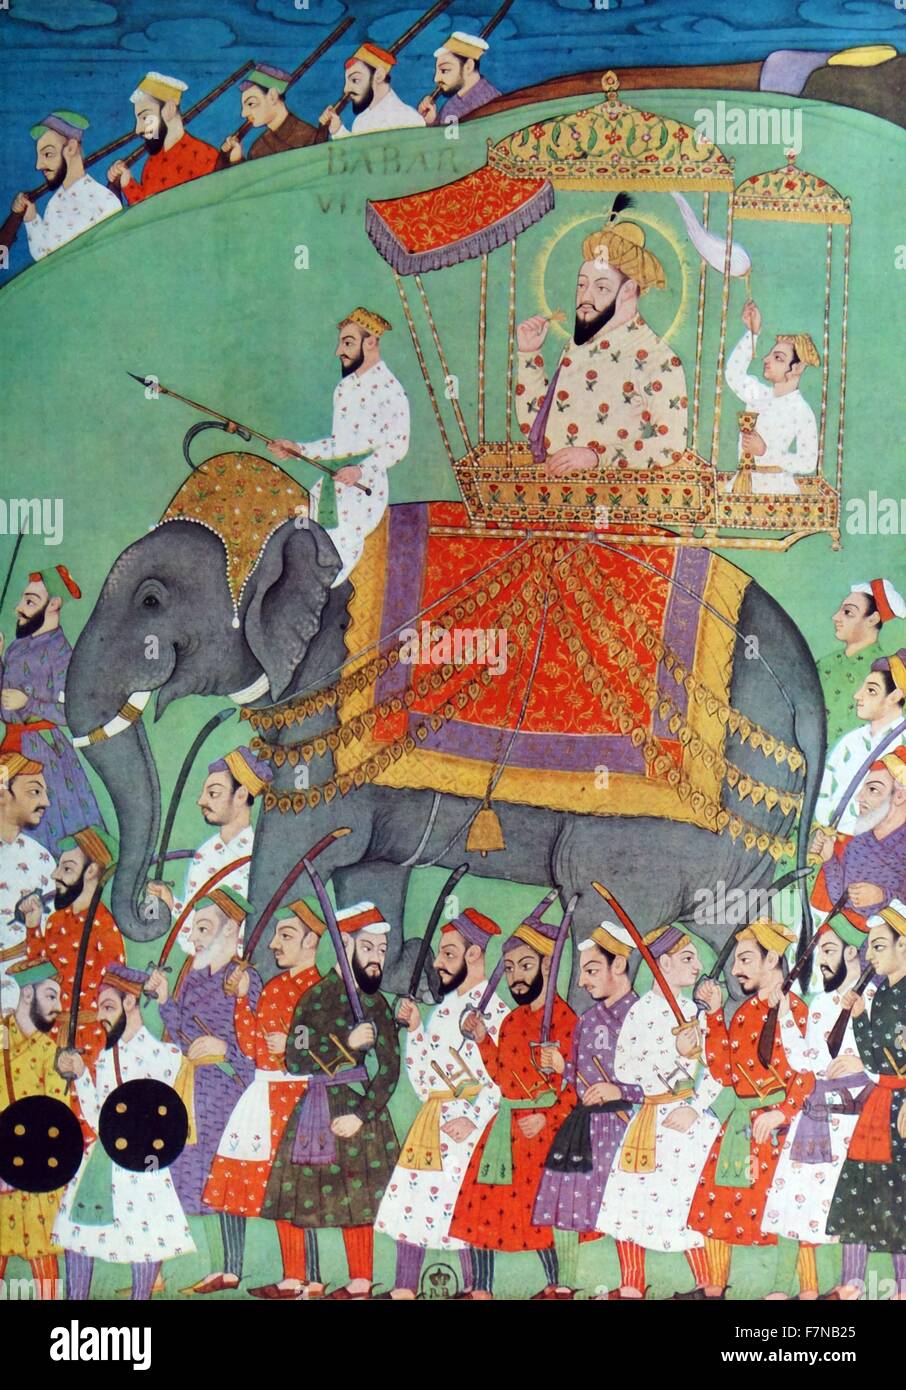 L'imperatore Mughal Babu visita i suoi soldati mentre montato su un elefante. Il XVII secolo. Babur era un conquistatore dall Asia centrale, che è riuscito a porre le basi per la dinastia Mughal nel subcontinente indiano e divenne il primo imperatore Mughal Foto Stock